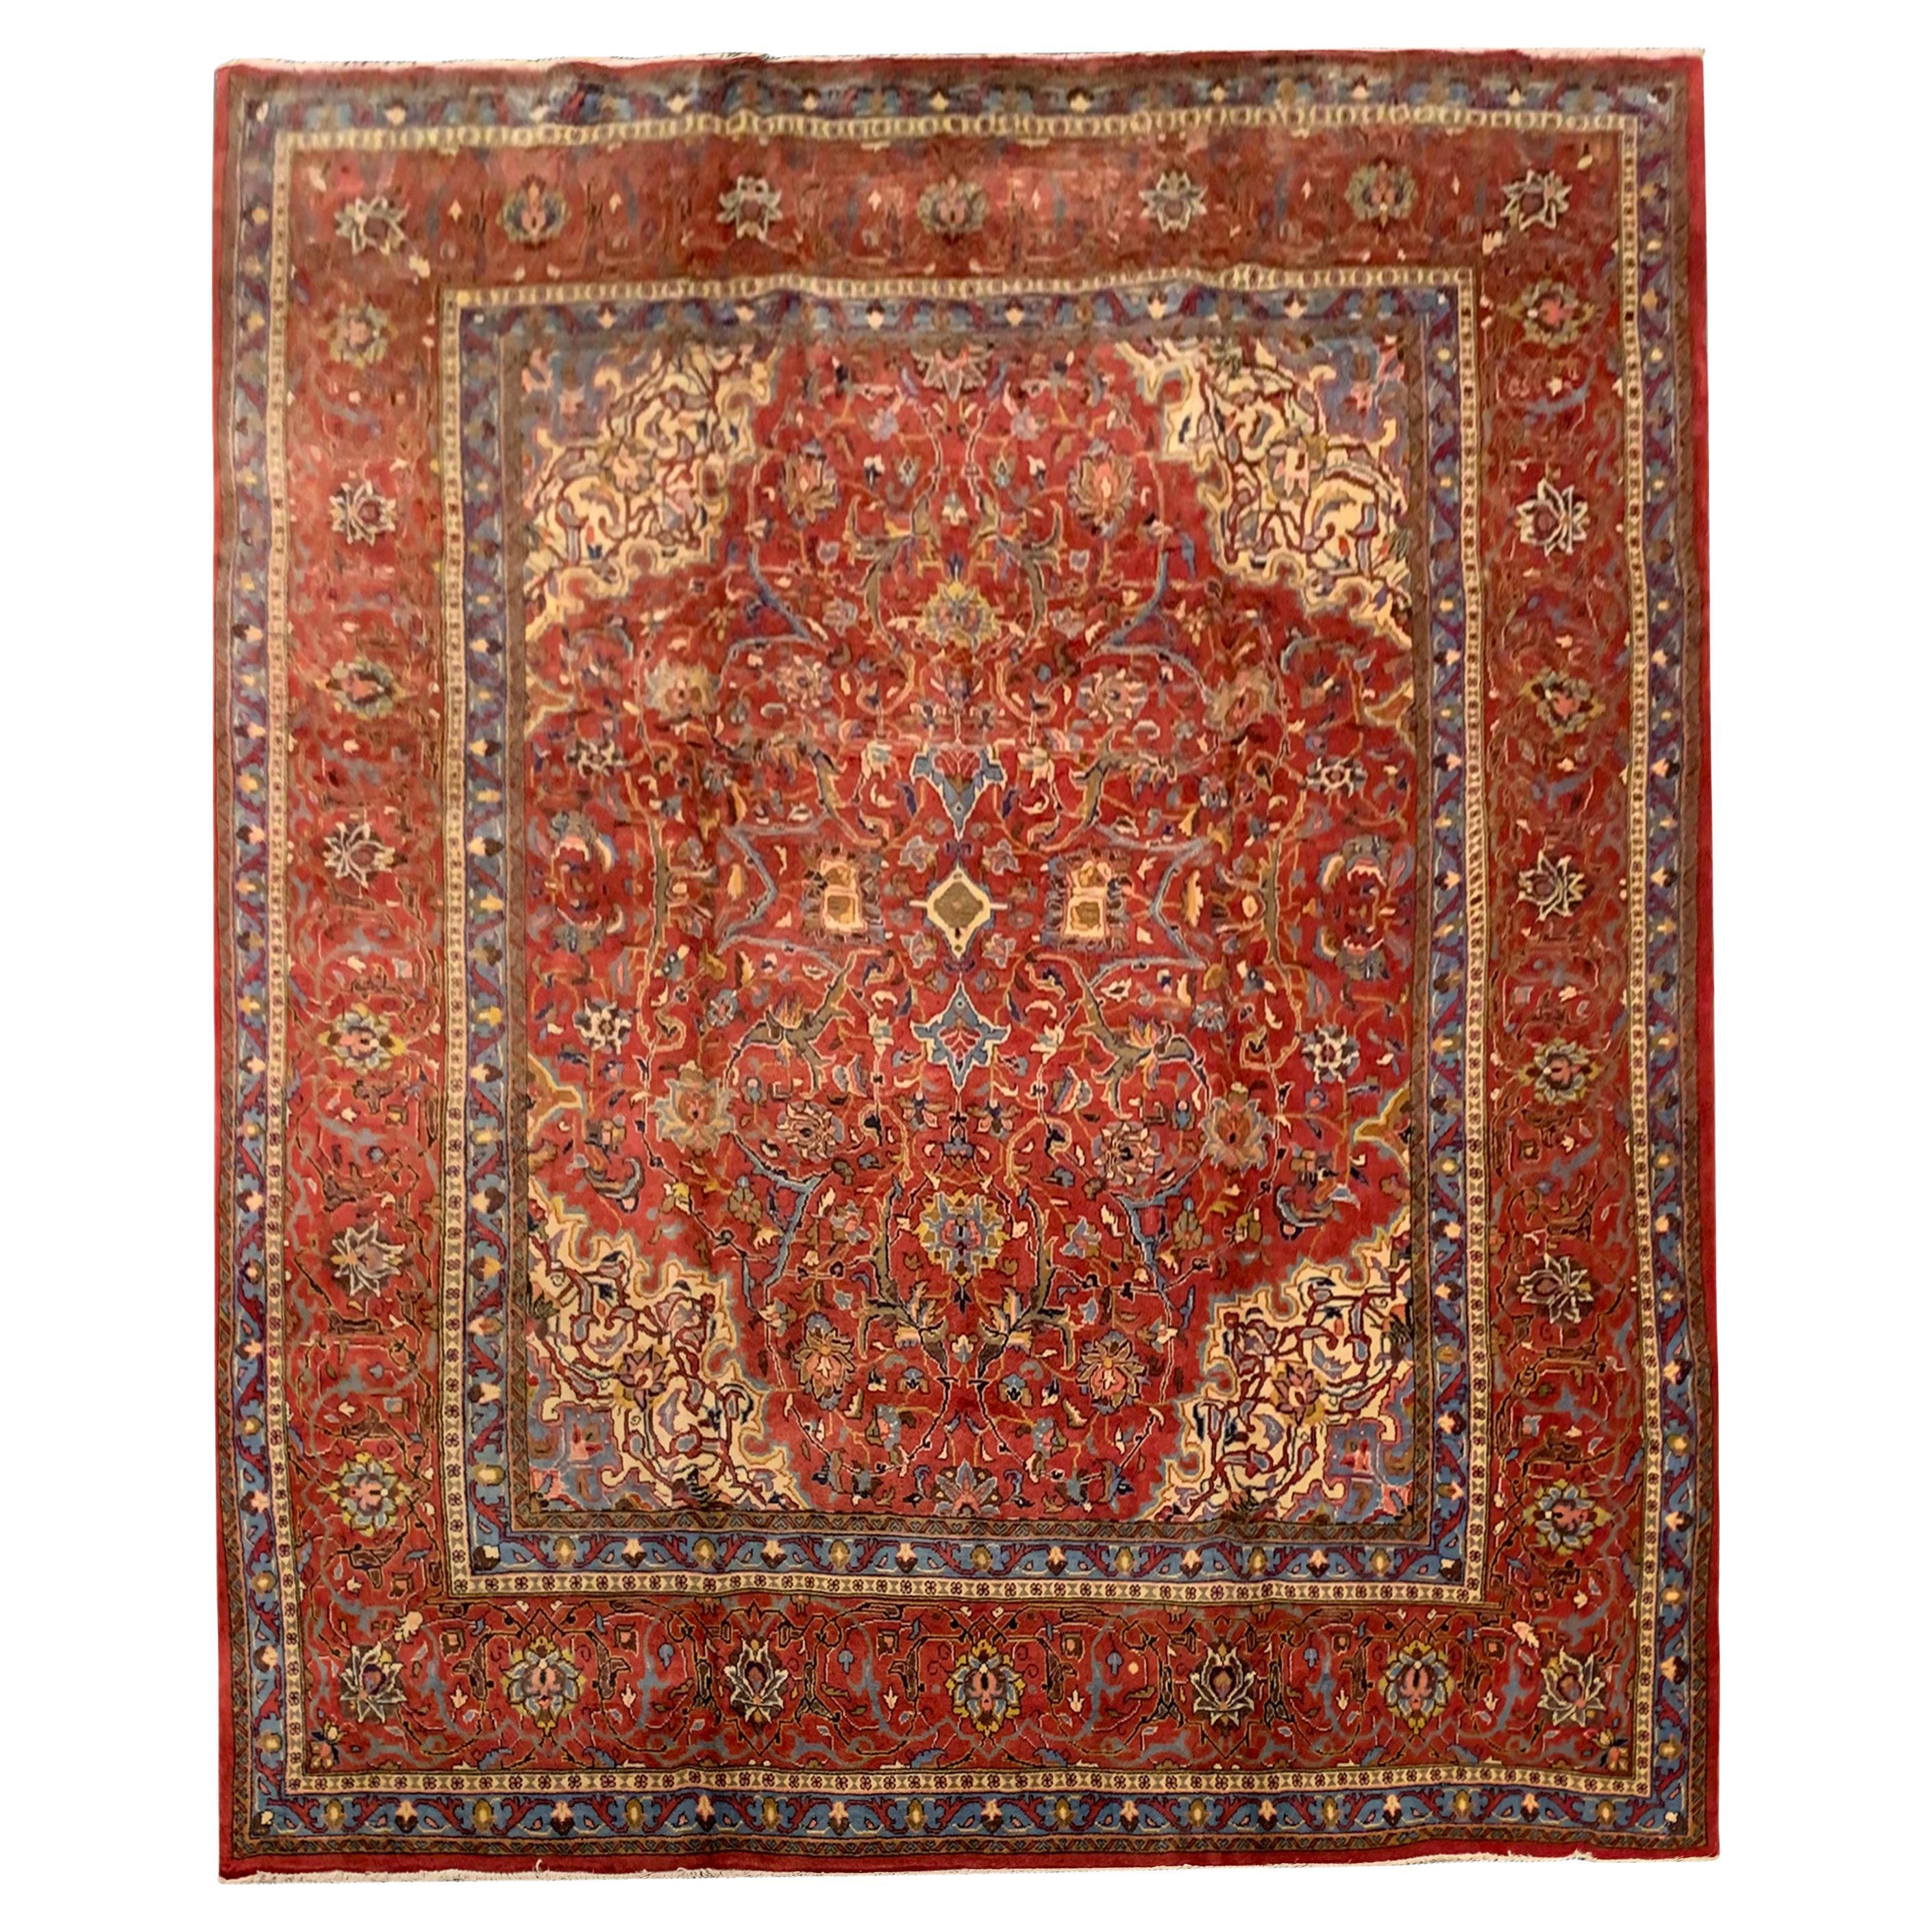 Grand tapis vintage en laine tissé à la main, tapis traditionnel rouge